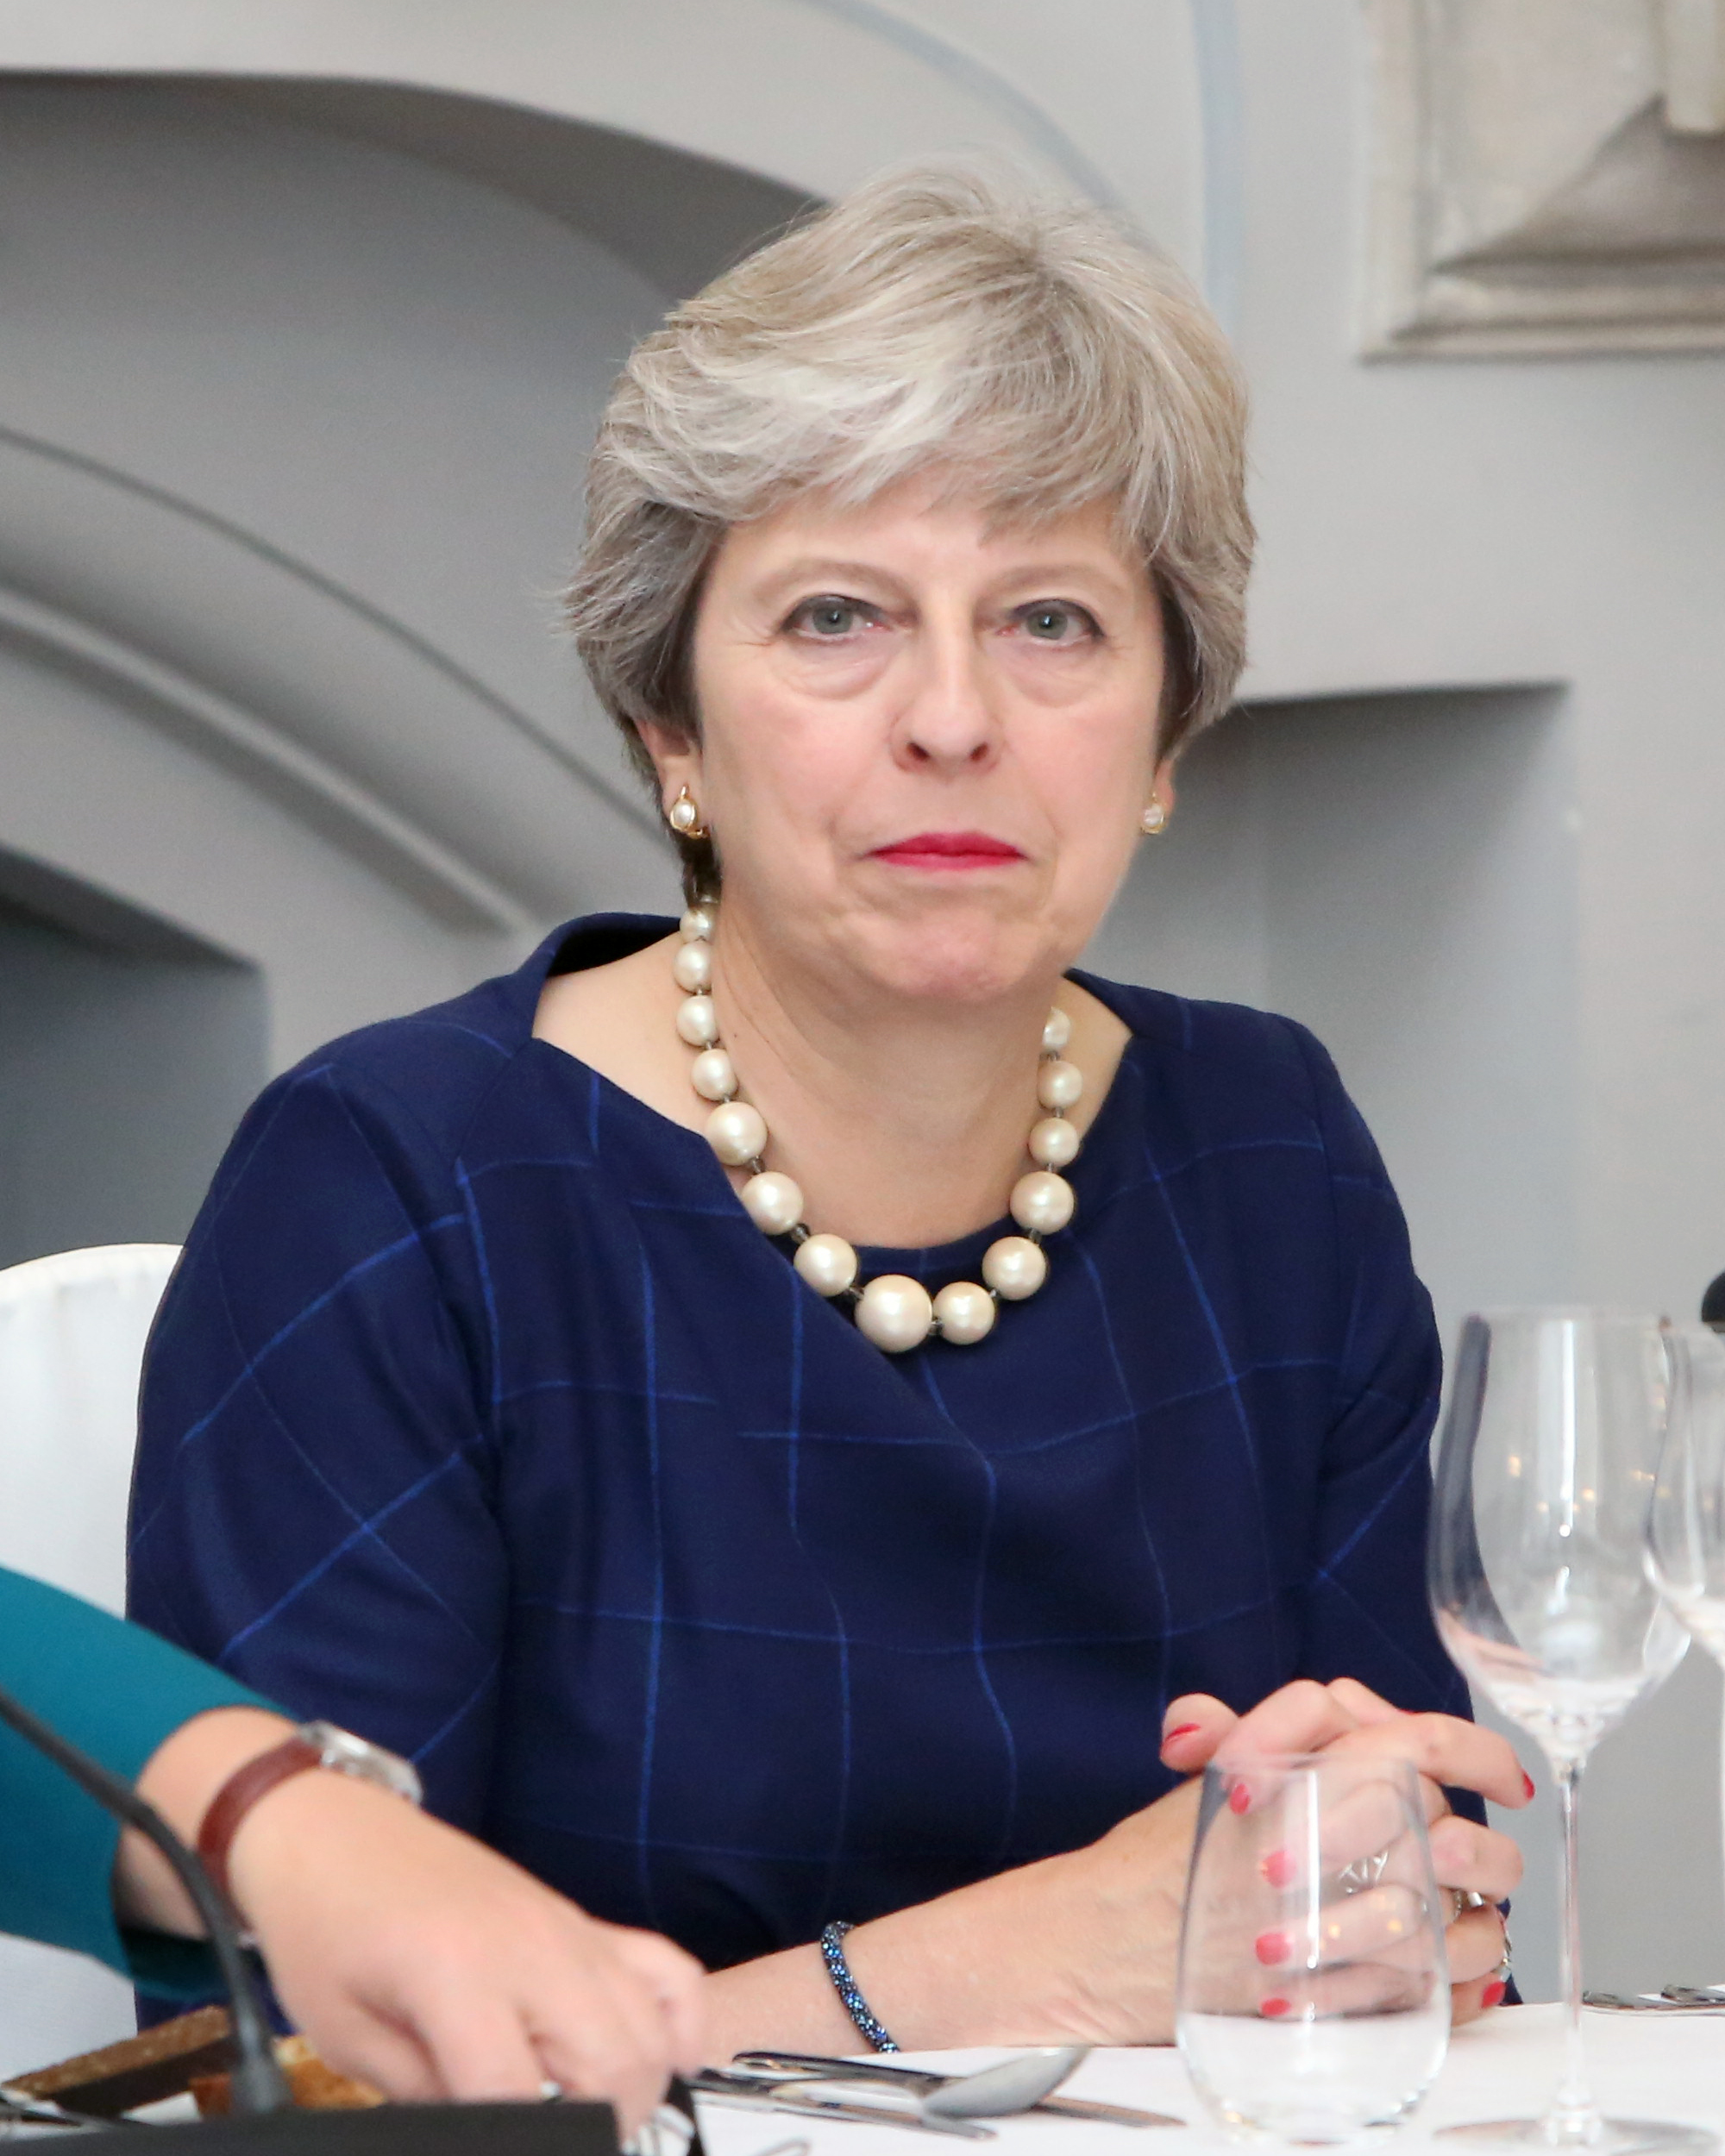 Theresa May looking glum.